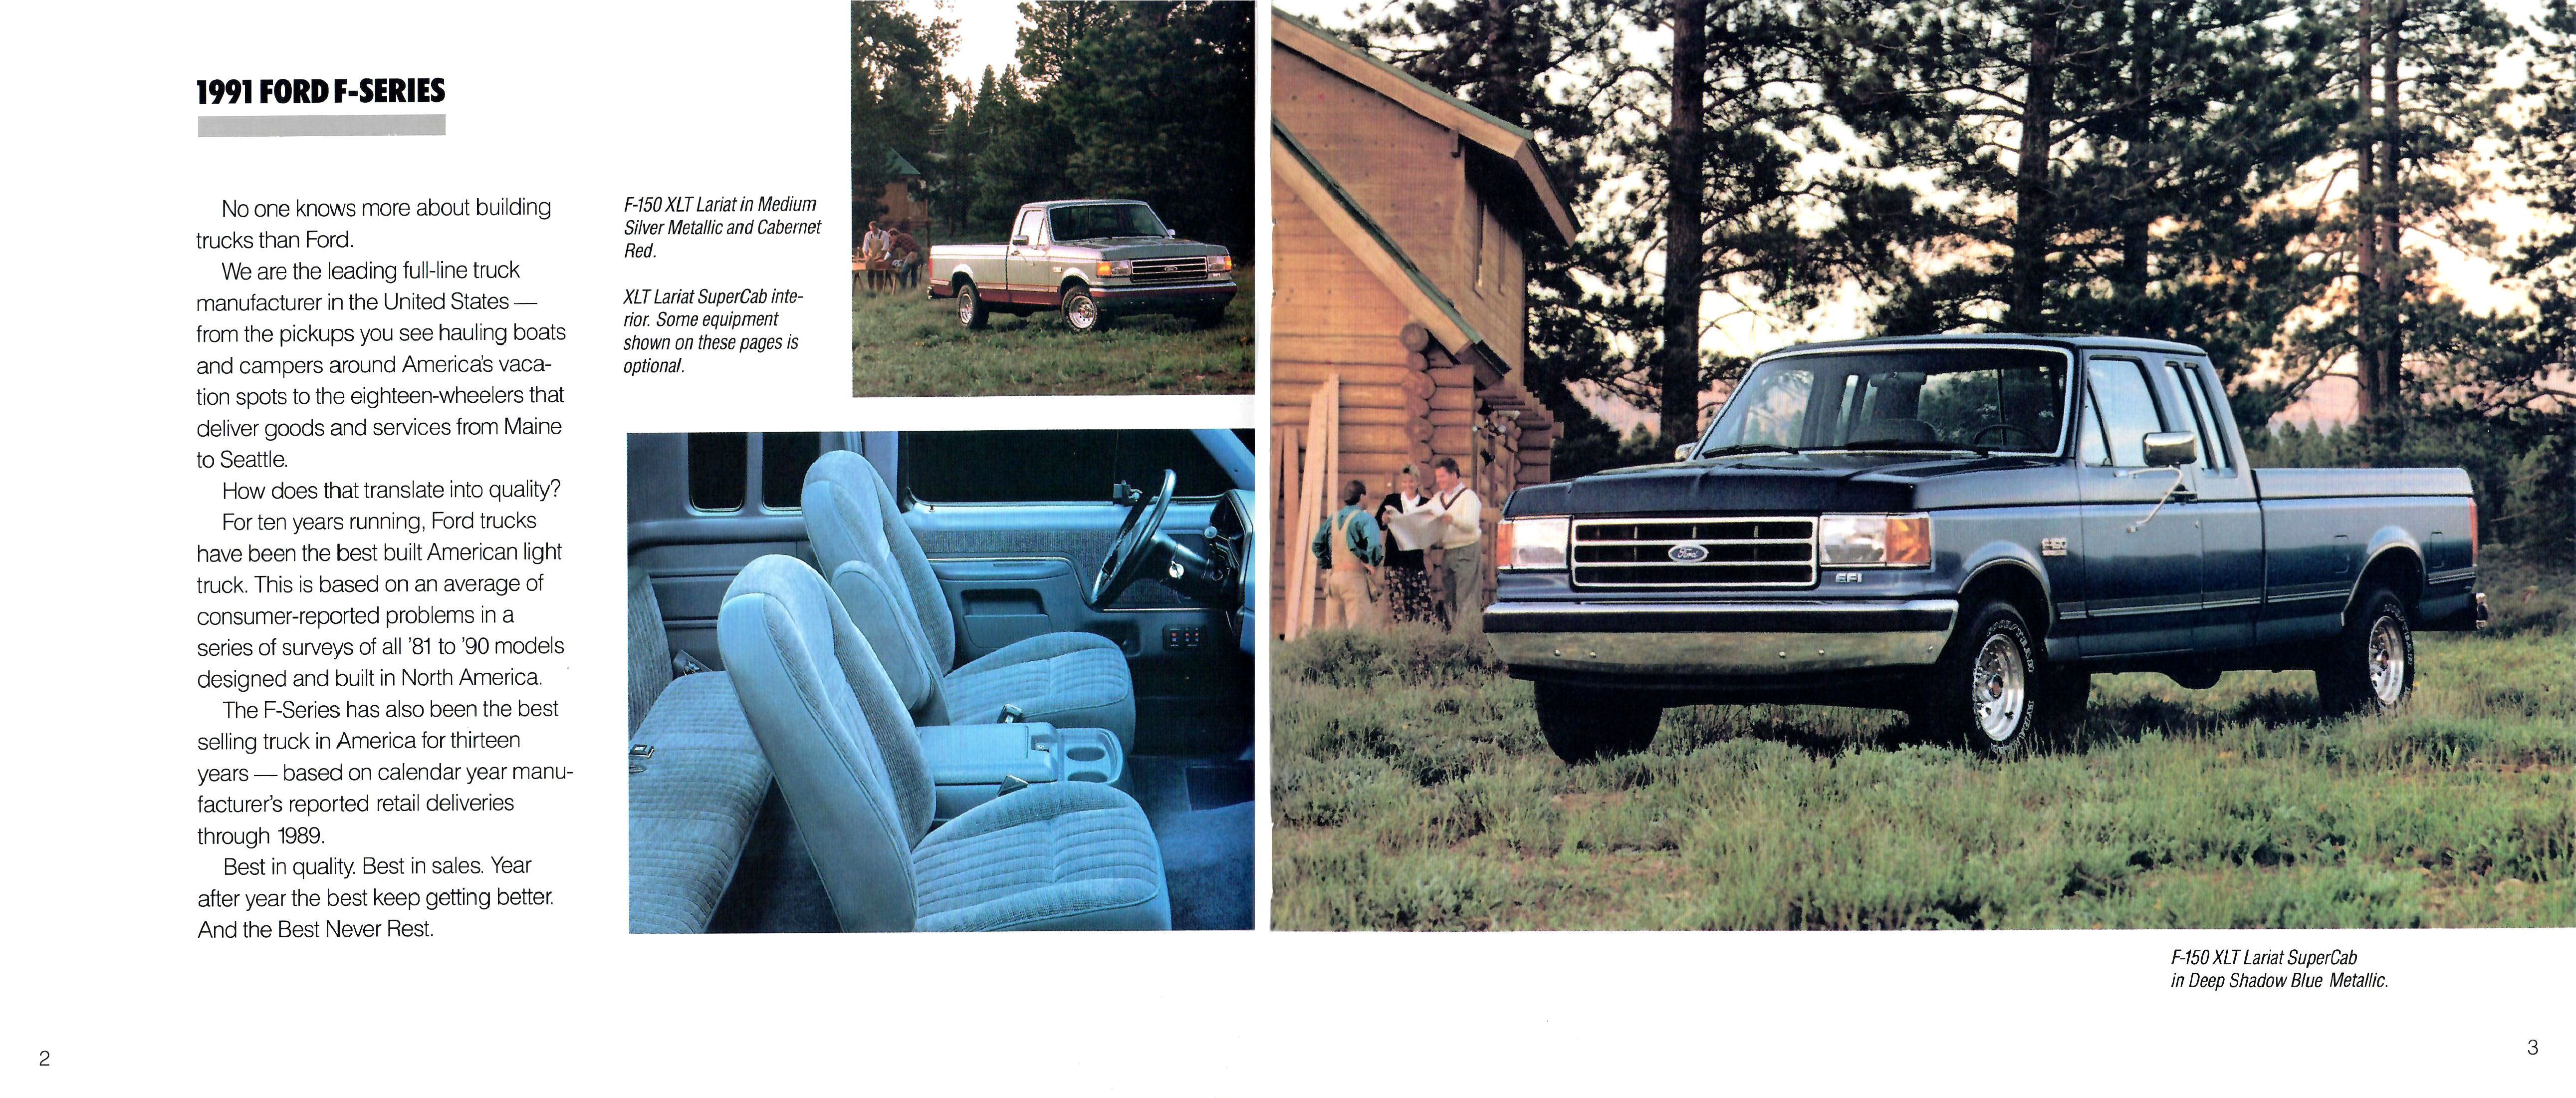 1991 Ford Trucks-02-03